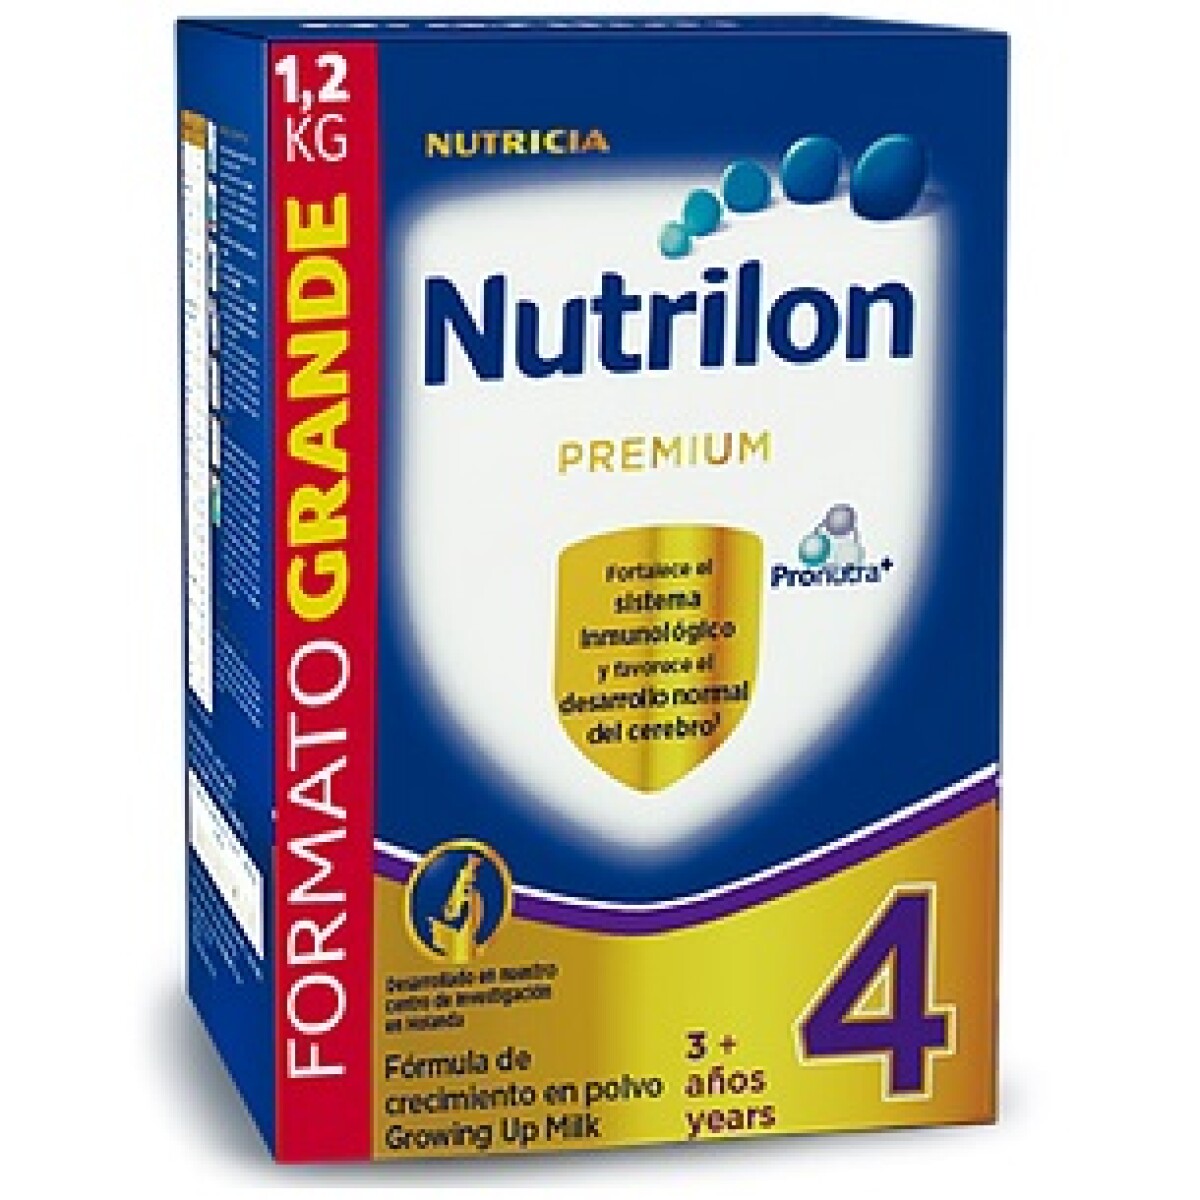 Nutrilon Premium 4 1.2 Kg 